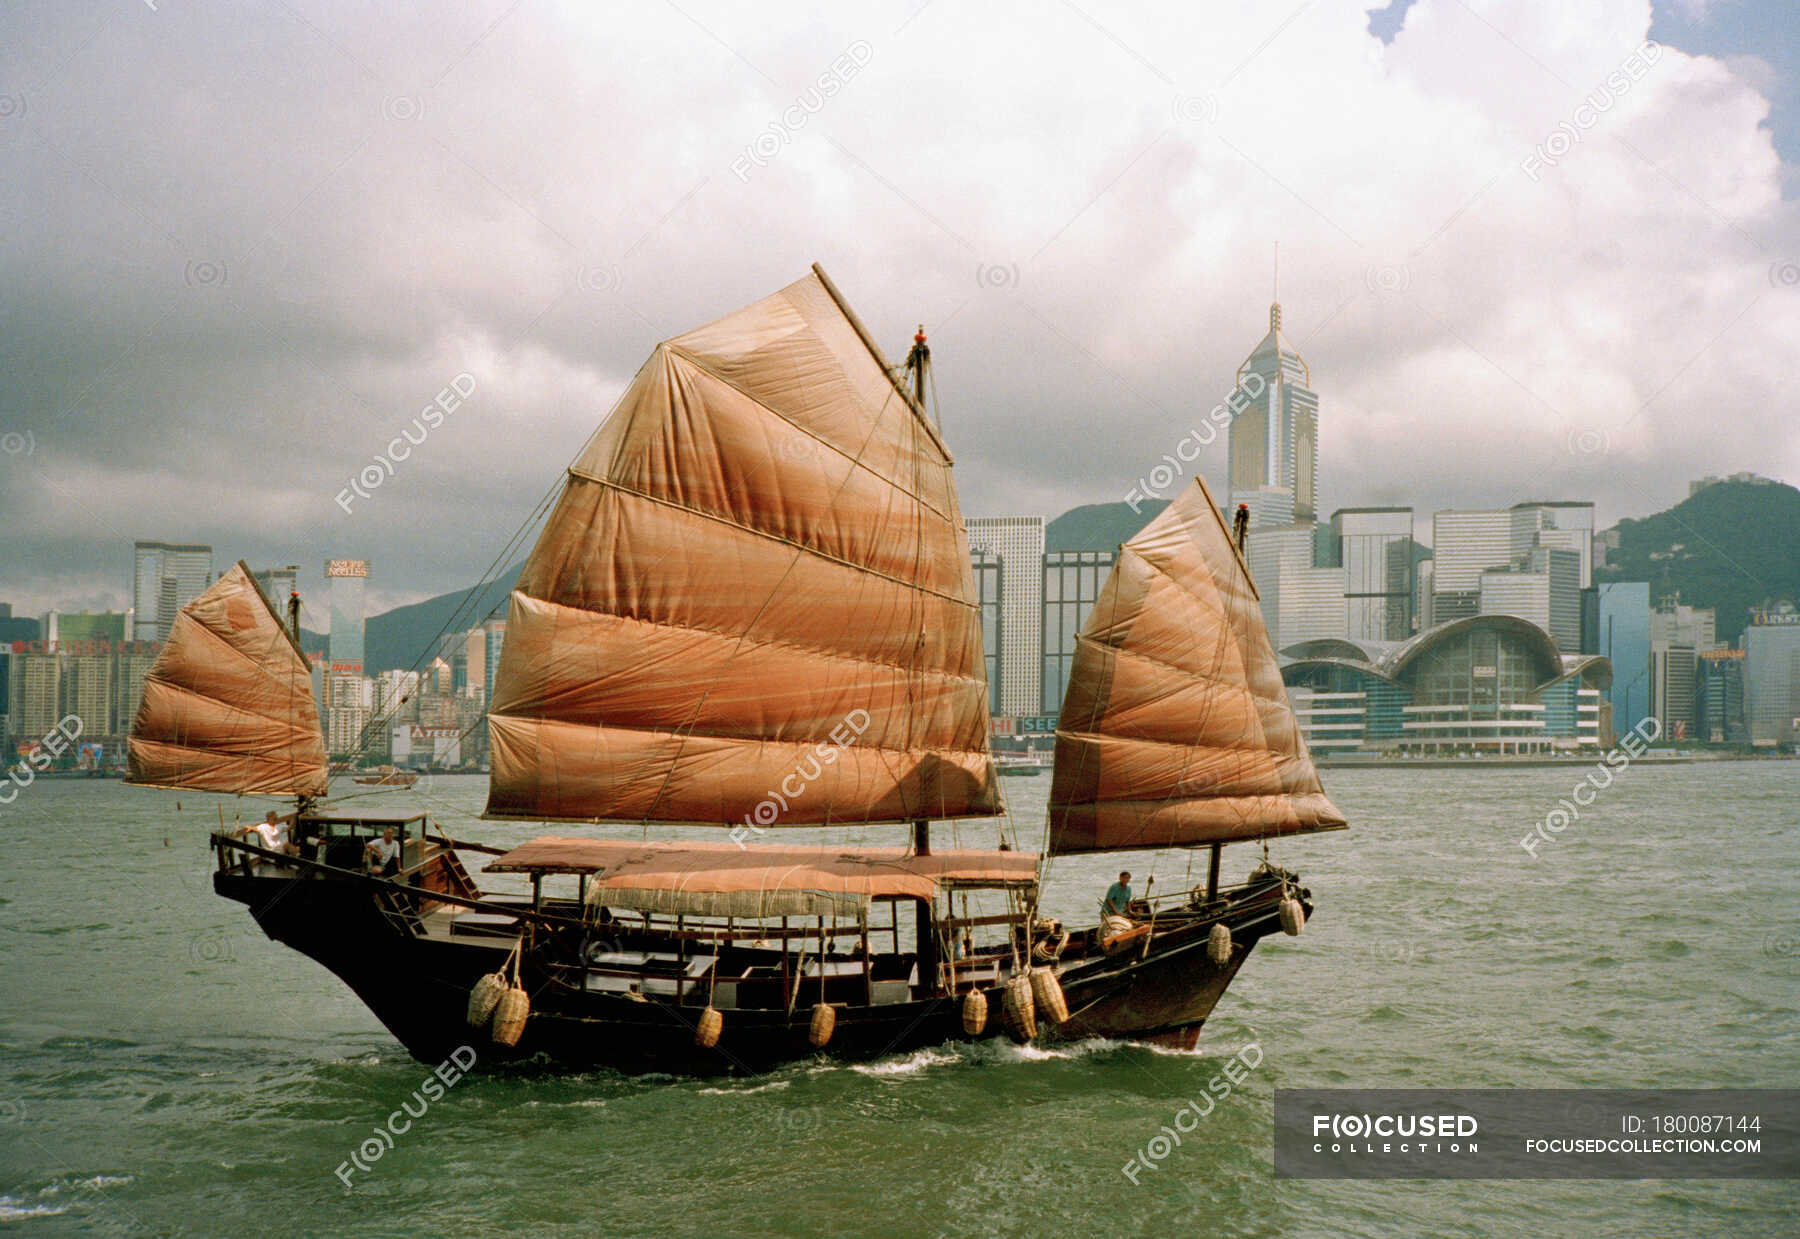 Китайская лодка 6 букв сканворд